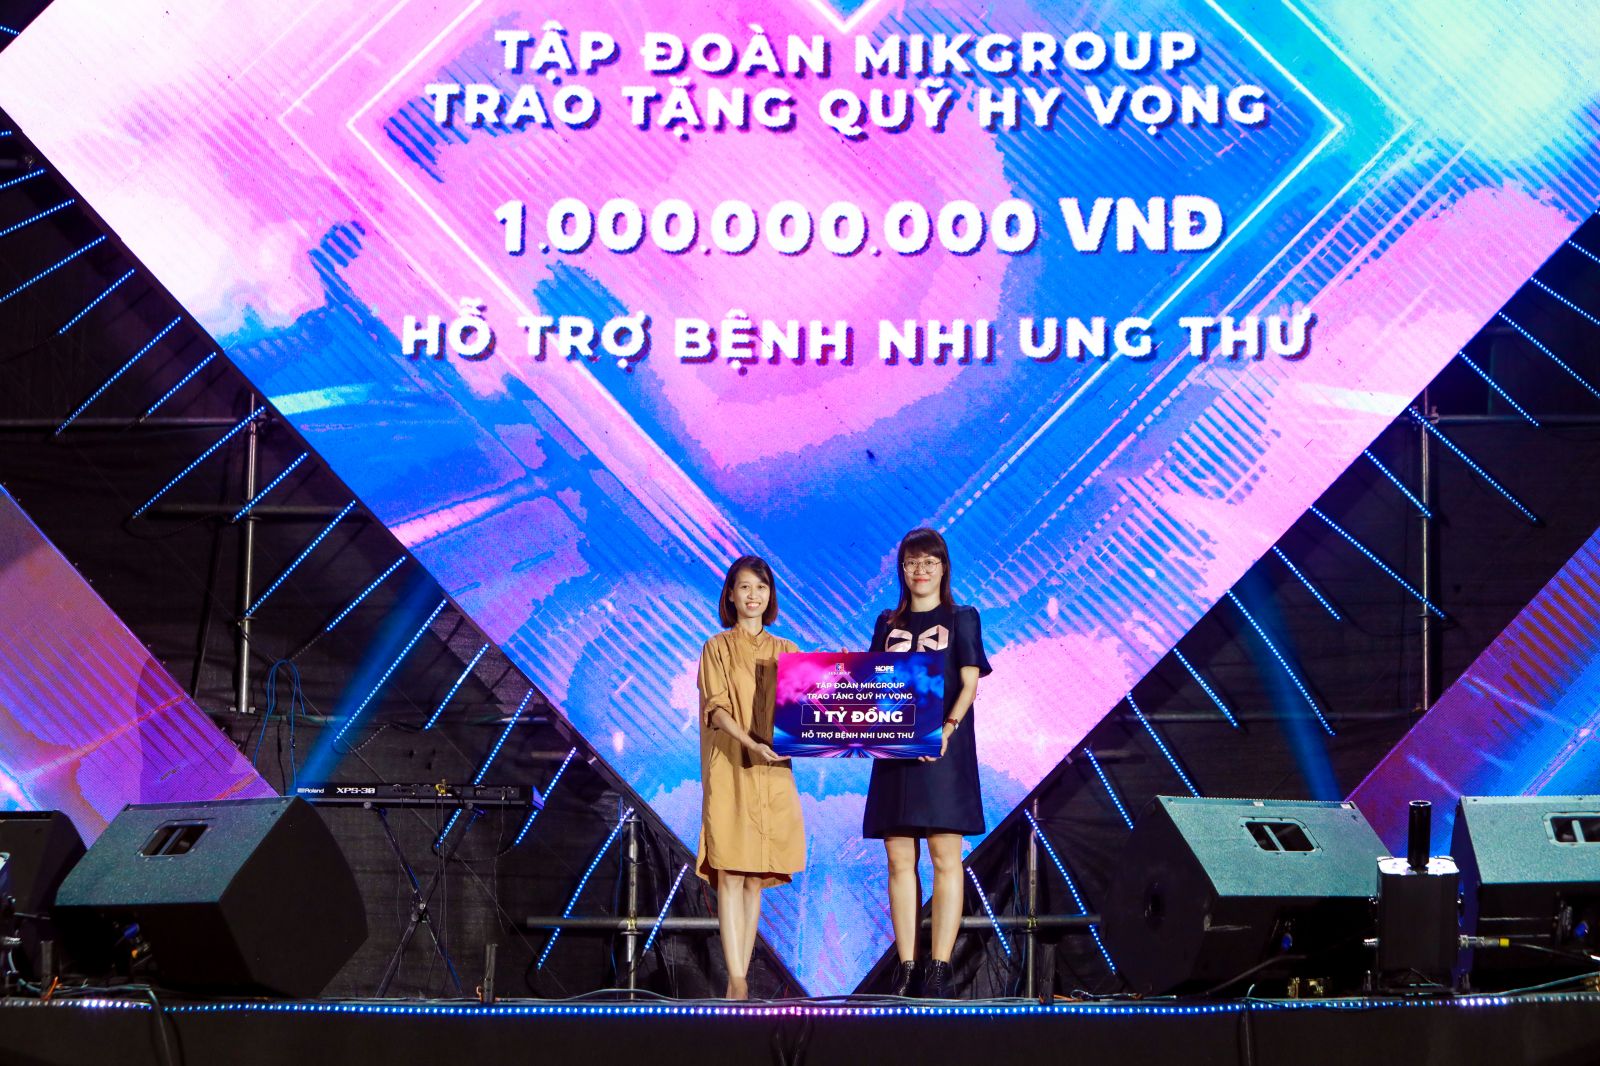 Đại diện MIKGroup (bên phải) trao tặng 1 tỷ đồng cho quỹ HOPE thực hiện chươngp/trình hỗ trợ bệnh nhi ung thư